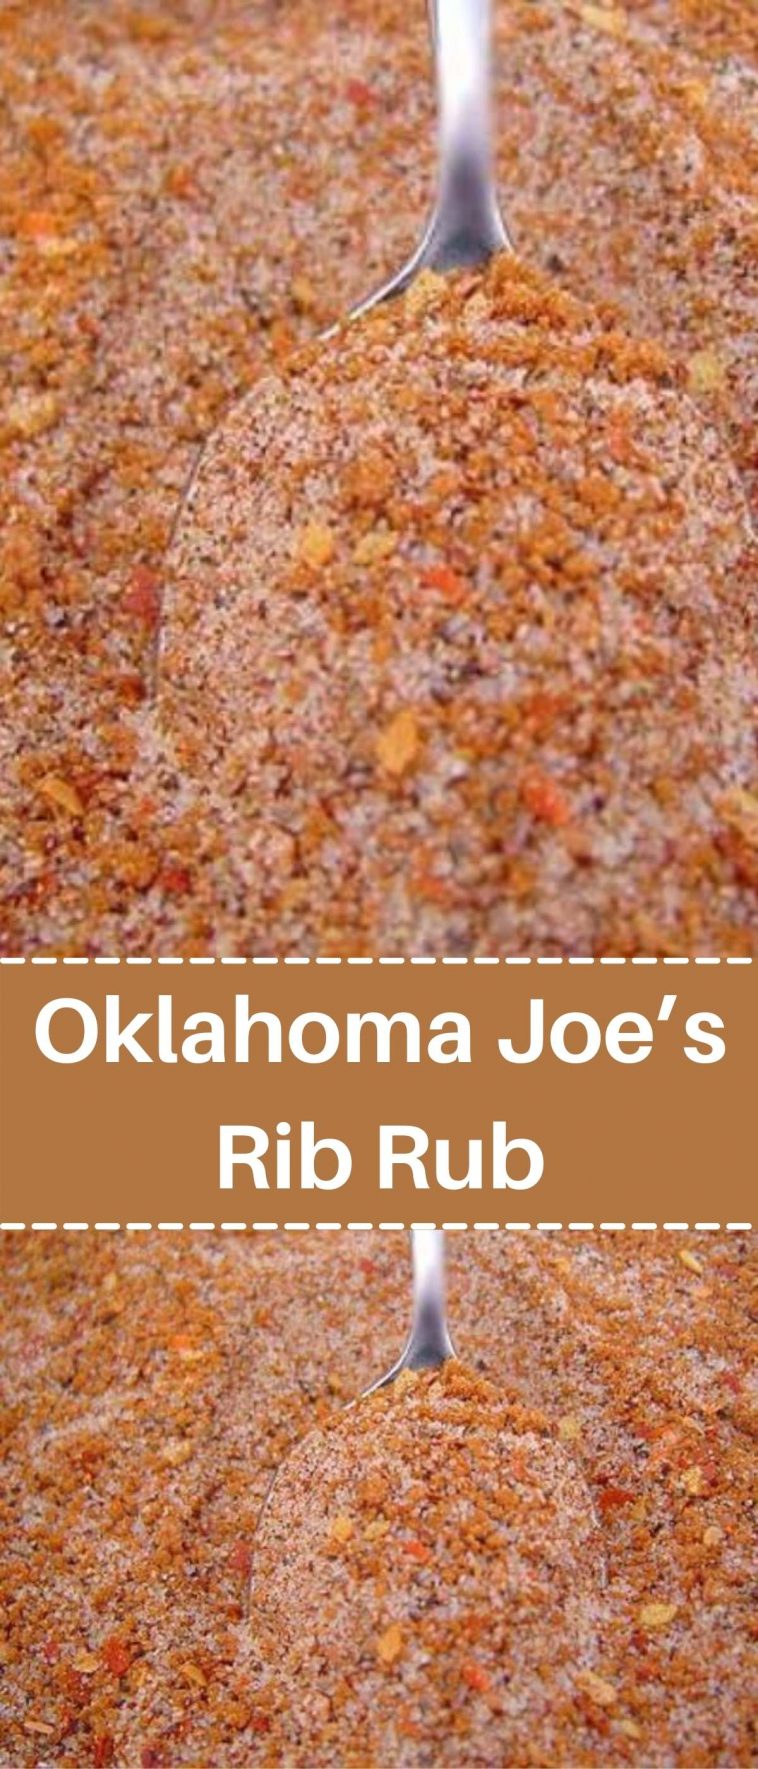 Oklahoma Joe’s Rib Rub